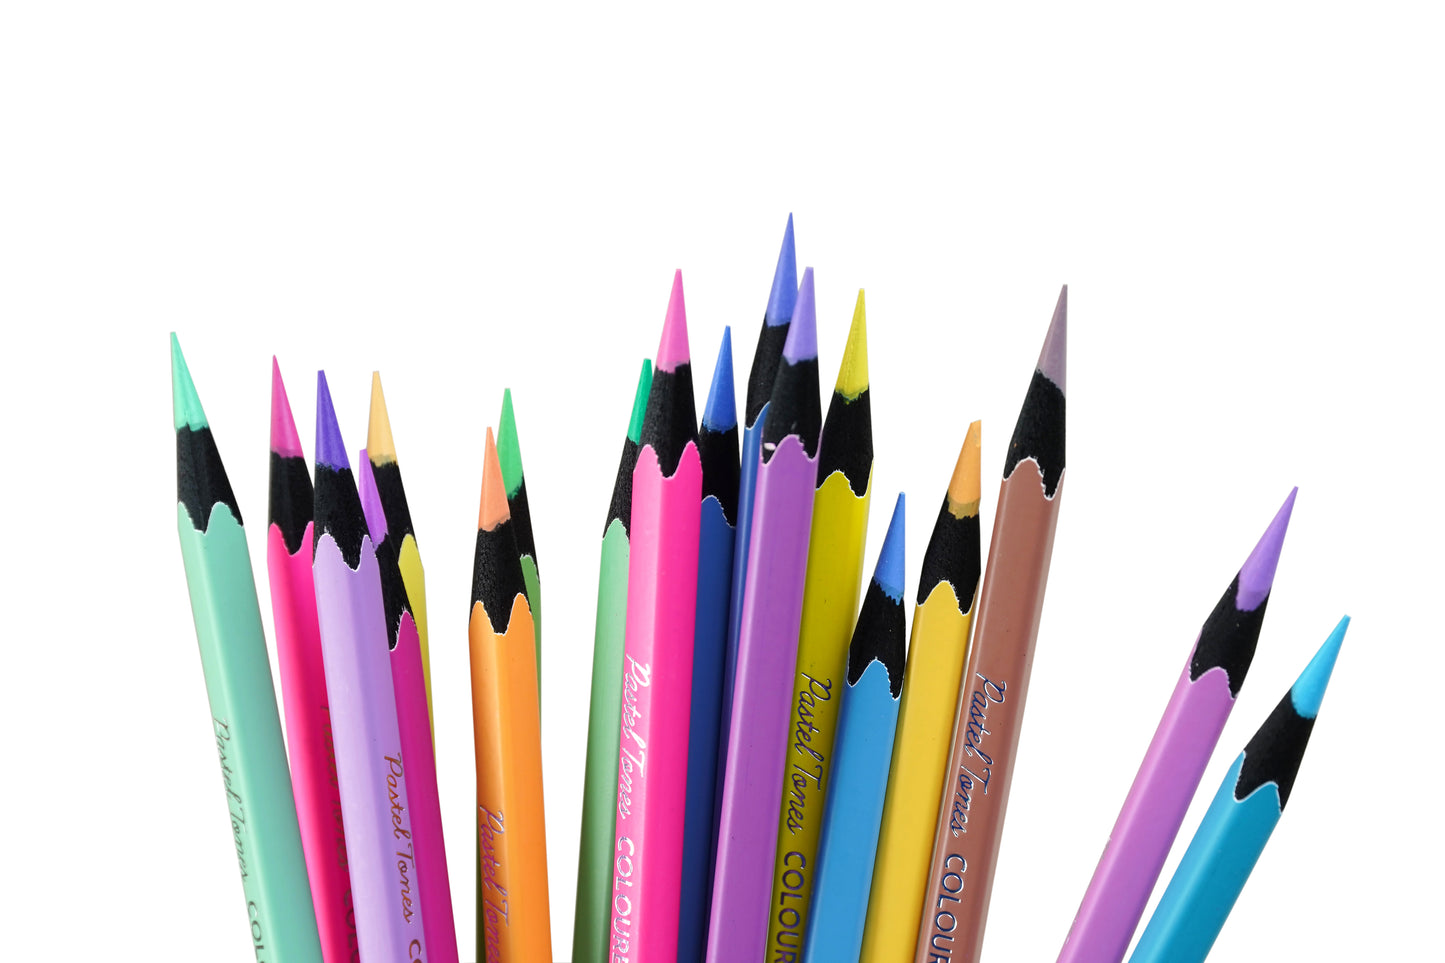 BRUSTRO Artists' Coloured Pencils Pastel Tone Set of 36 (in elegant tin box)